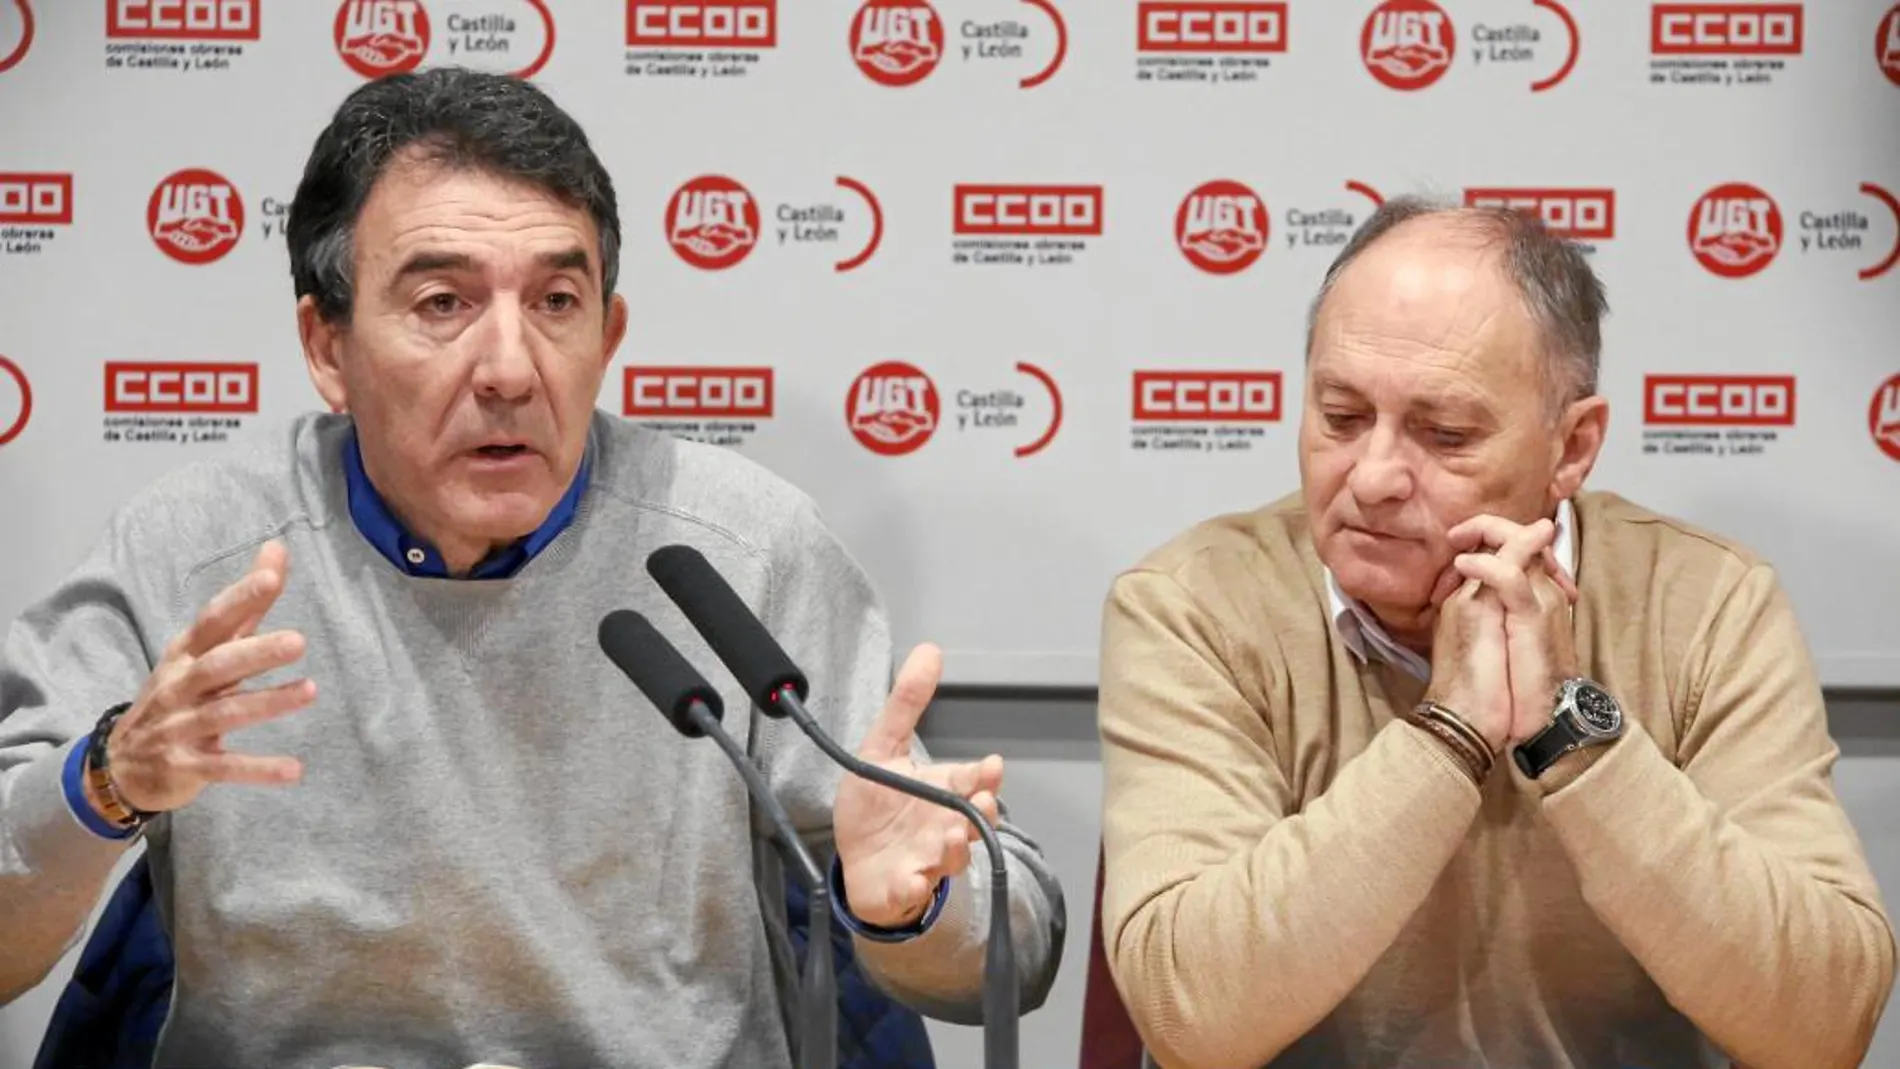 Ángel Hernández (CCOO) y Faustino Temprano (UGT), durante una reciente rueda de prensa en Valladolid